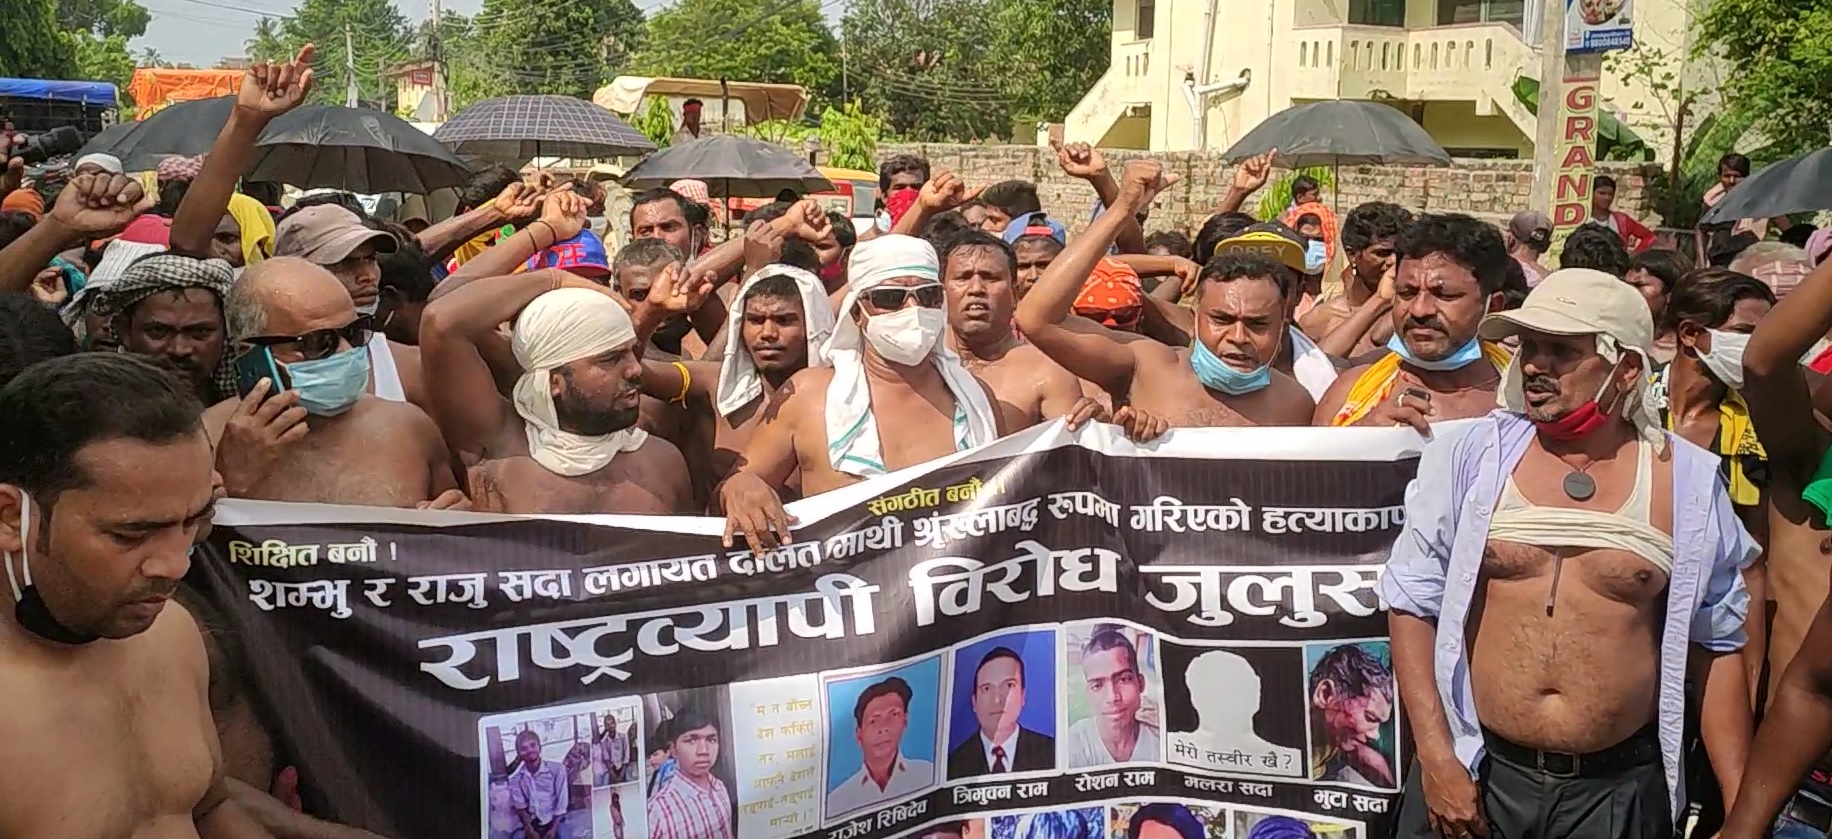 दलित समुदायमाथिको भेदभावविरुद्ध जनकपुरमा अर्धनग्न प्रदर्शन (फोटो फिचरसहित)